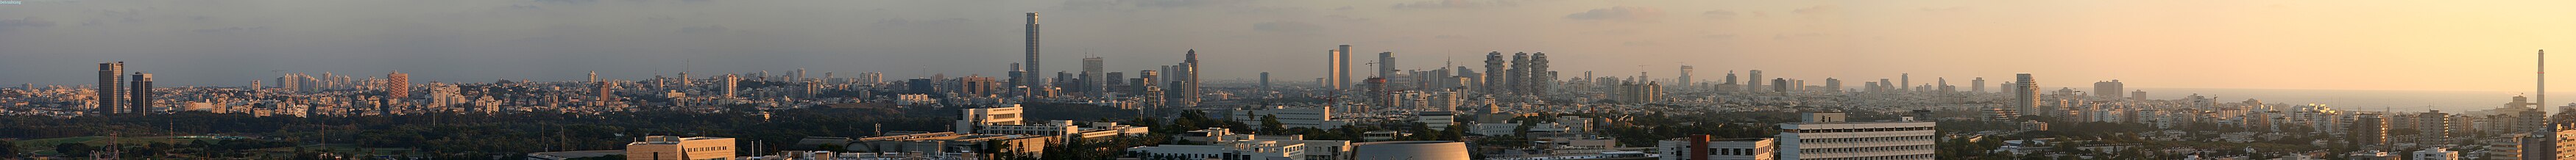 תל אביב ורמת-גן במבט מגבעת האוניברסיטה (2006)